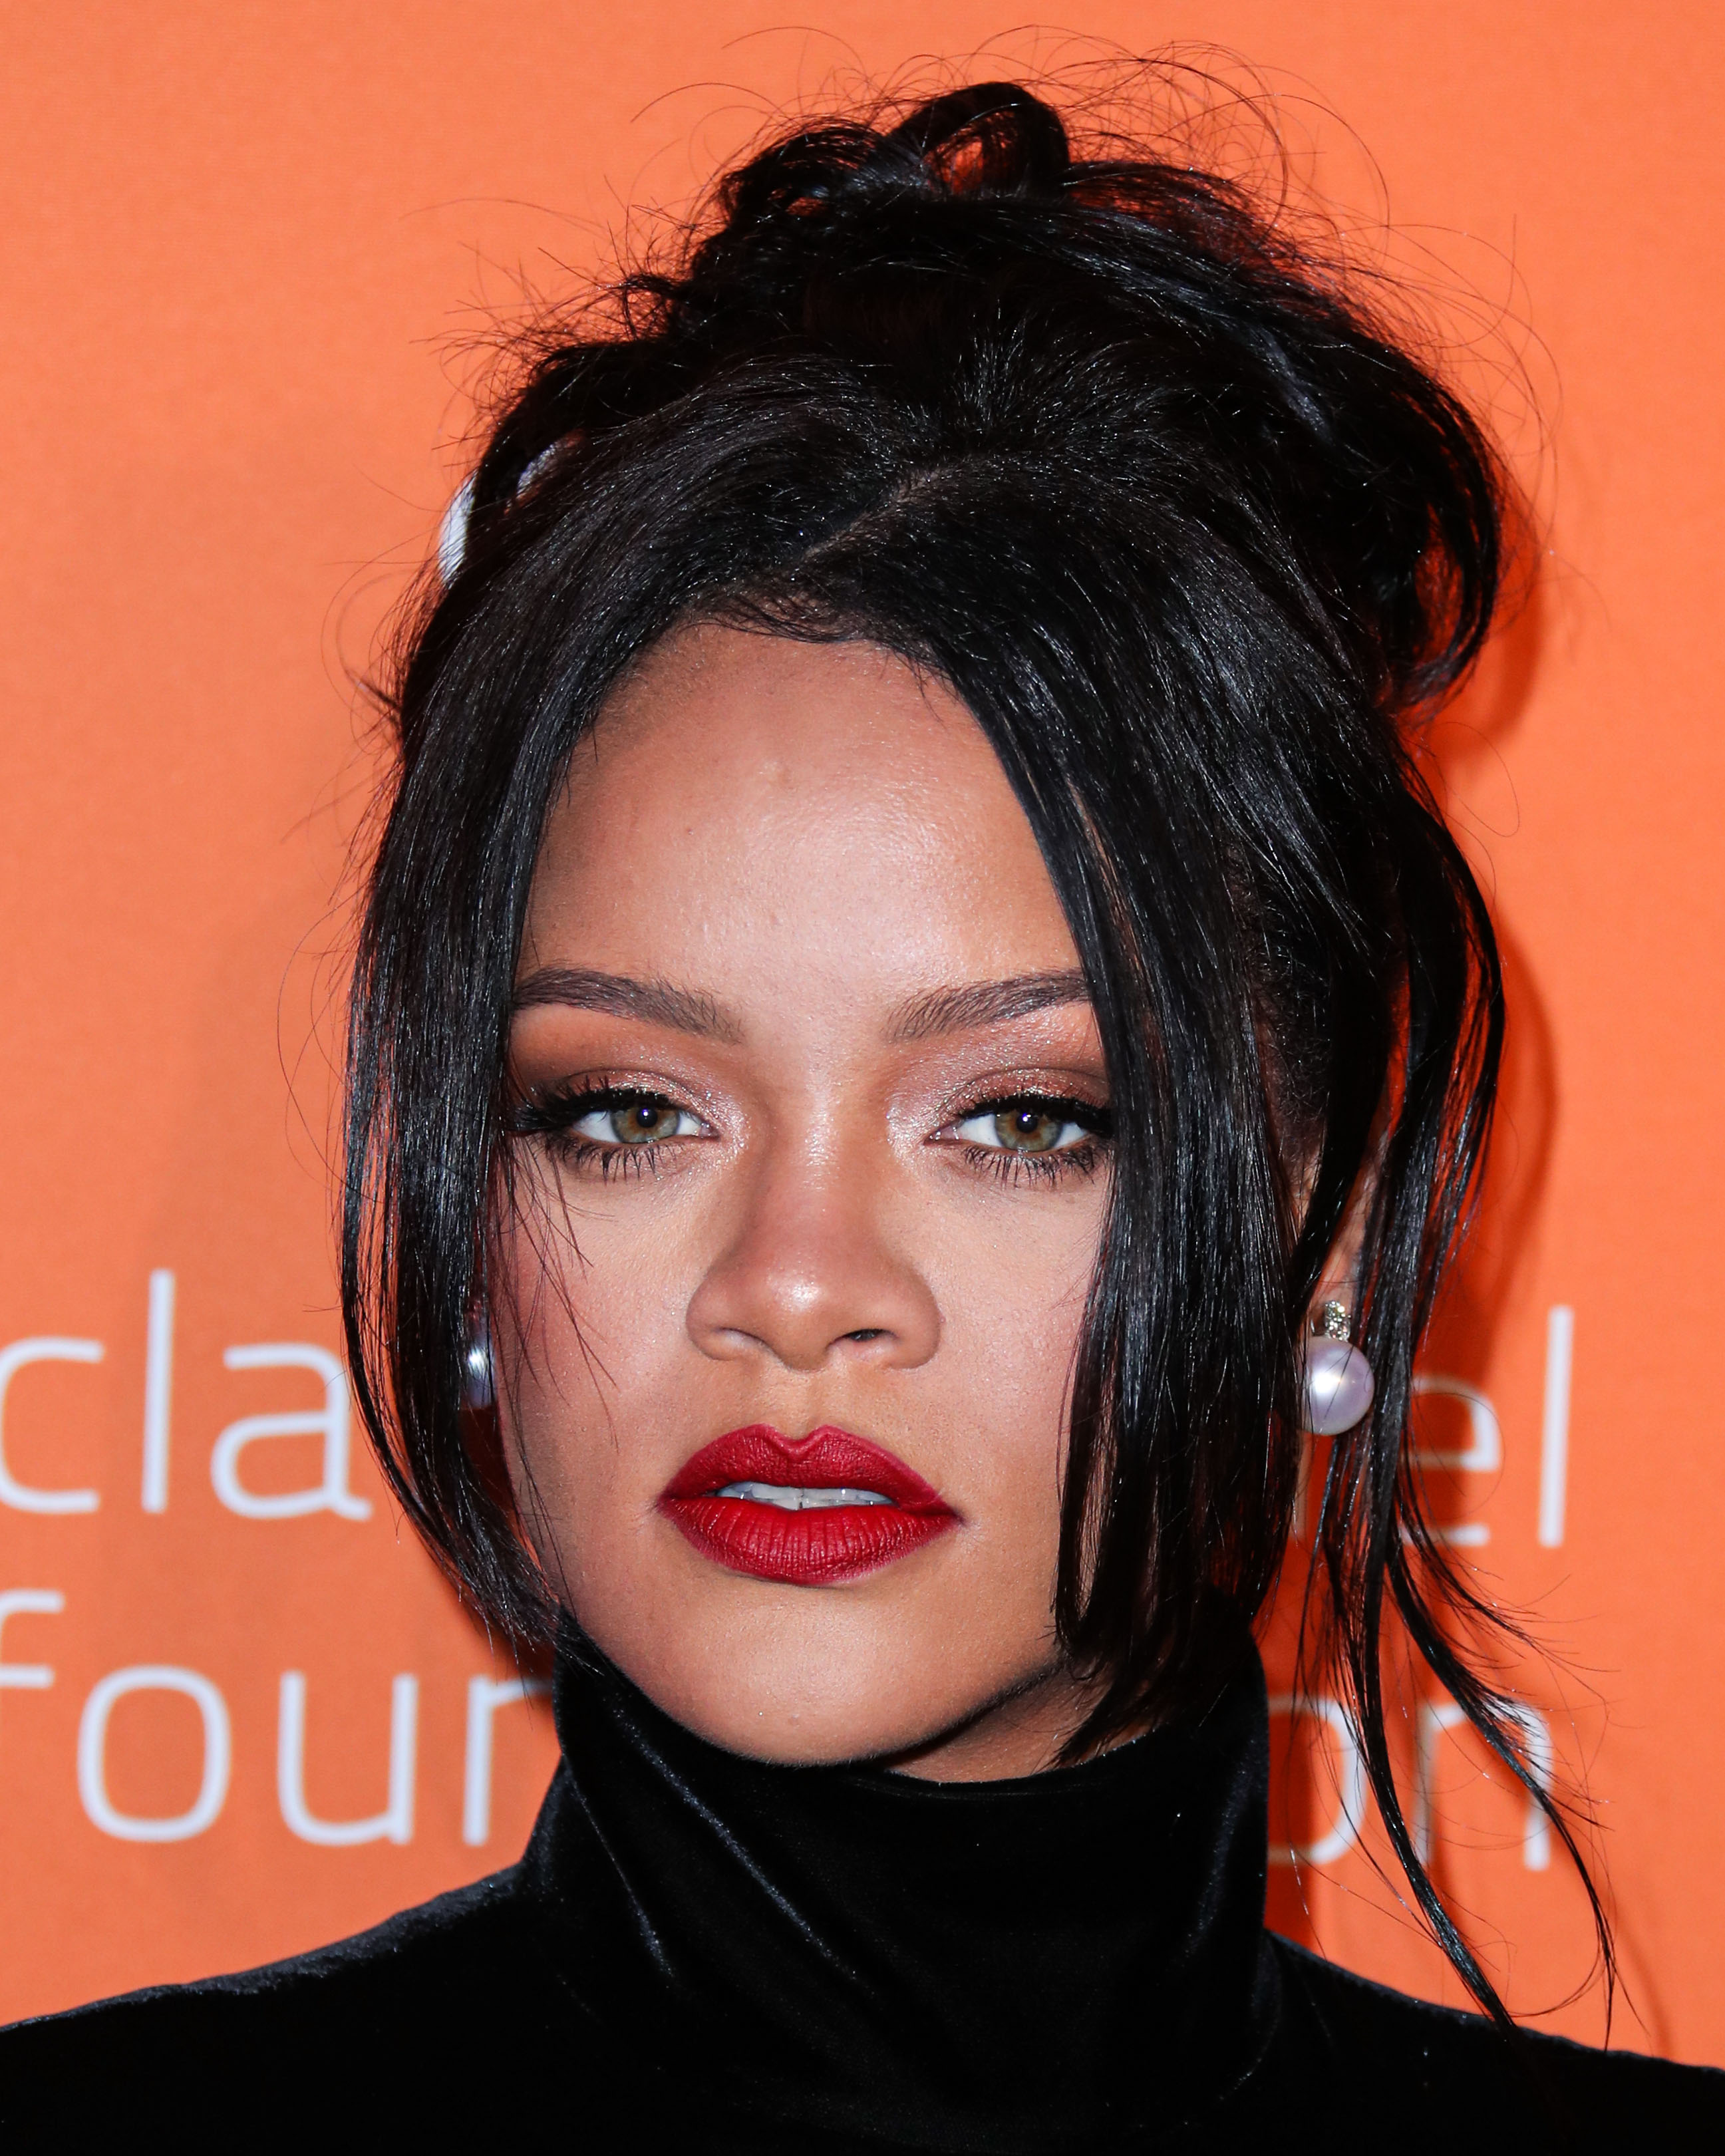 Τι είναι η durag που φοράει στα μαλλιά η Rihanna στο τελευταίο εξώφυλλο της βρετανικής Vogue;